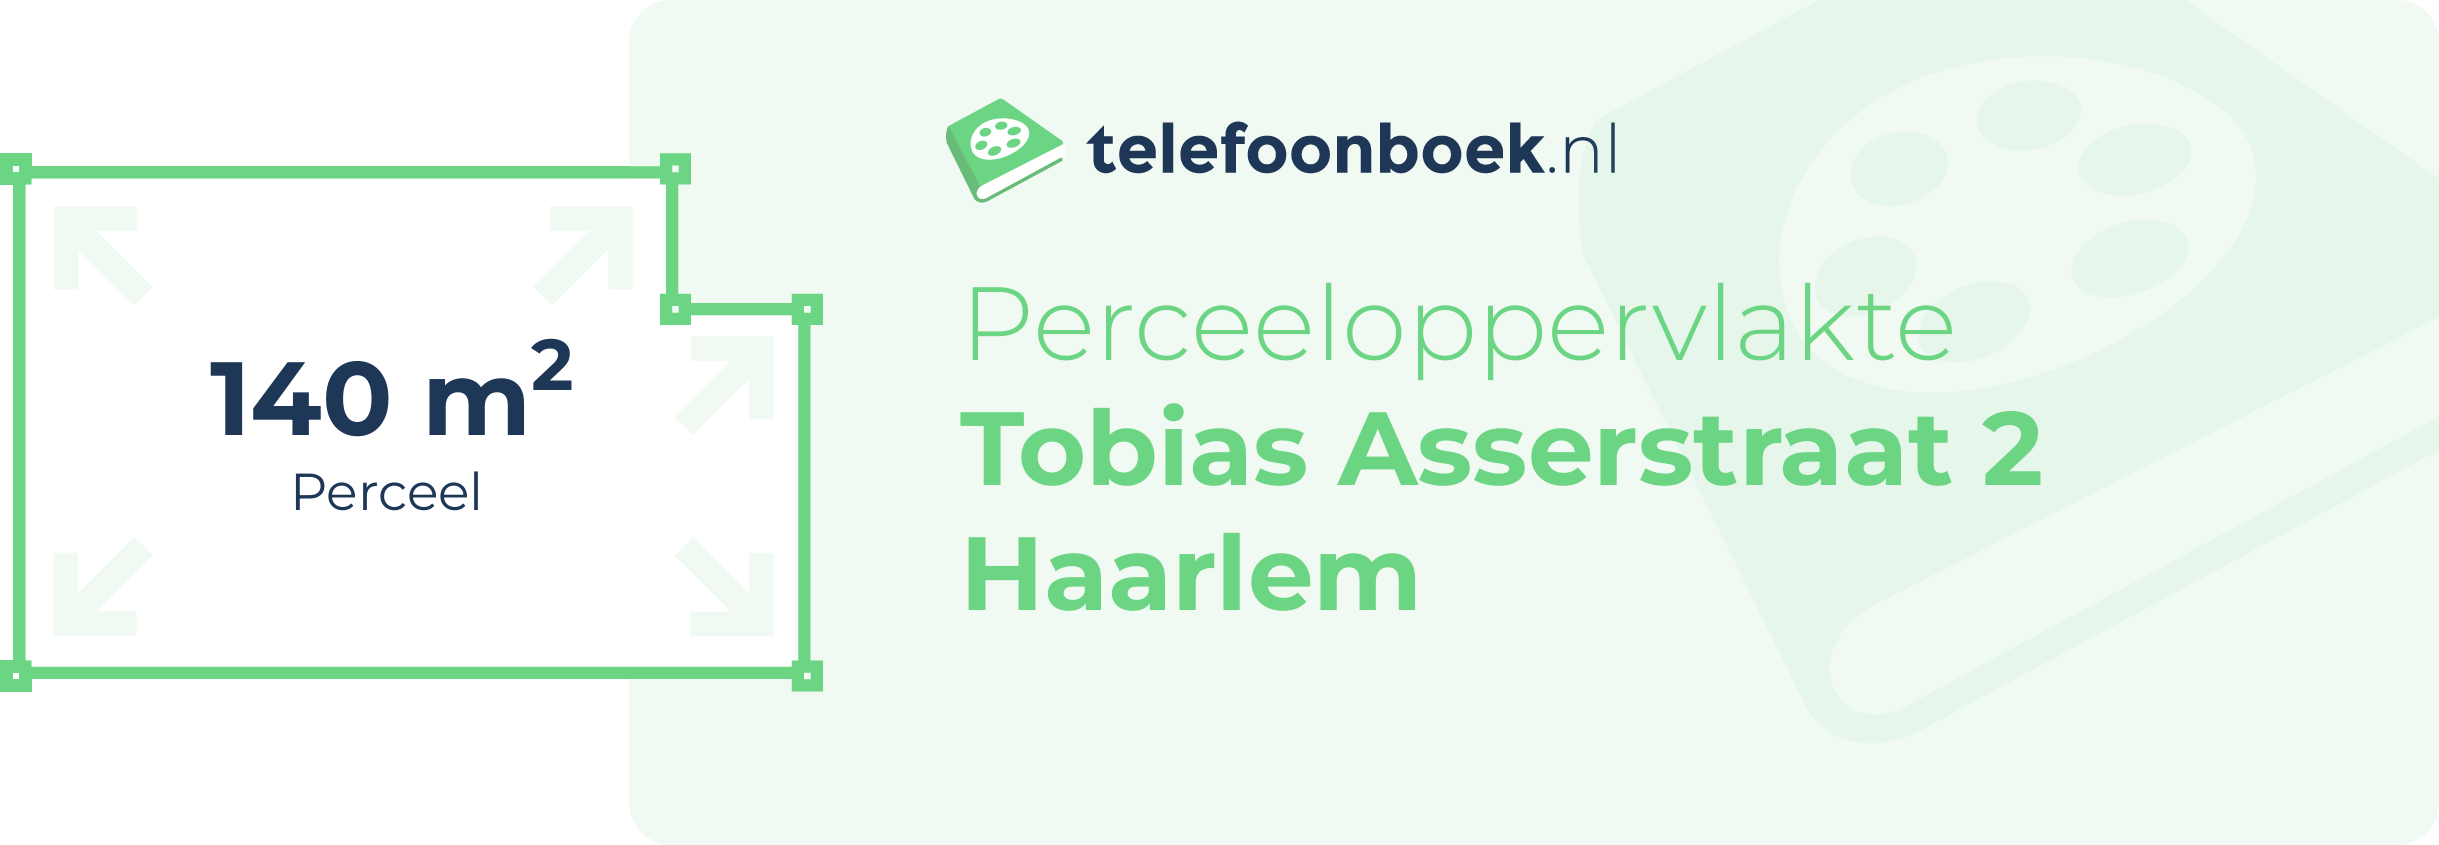 Perceeloppervlakte Tobias Asserstraat 2 Haarlem